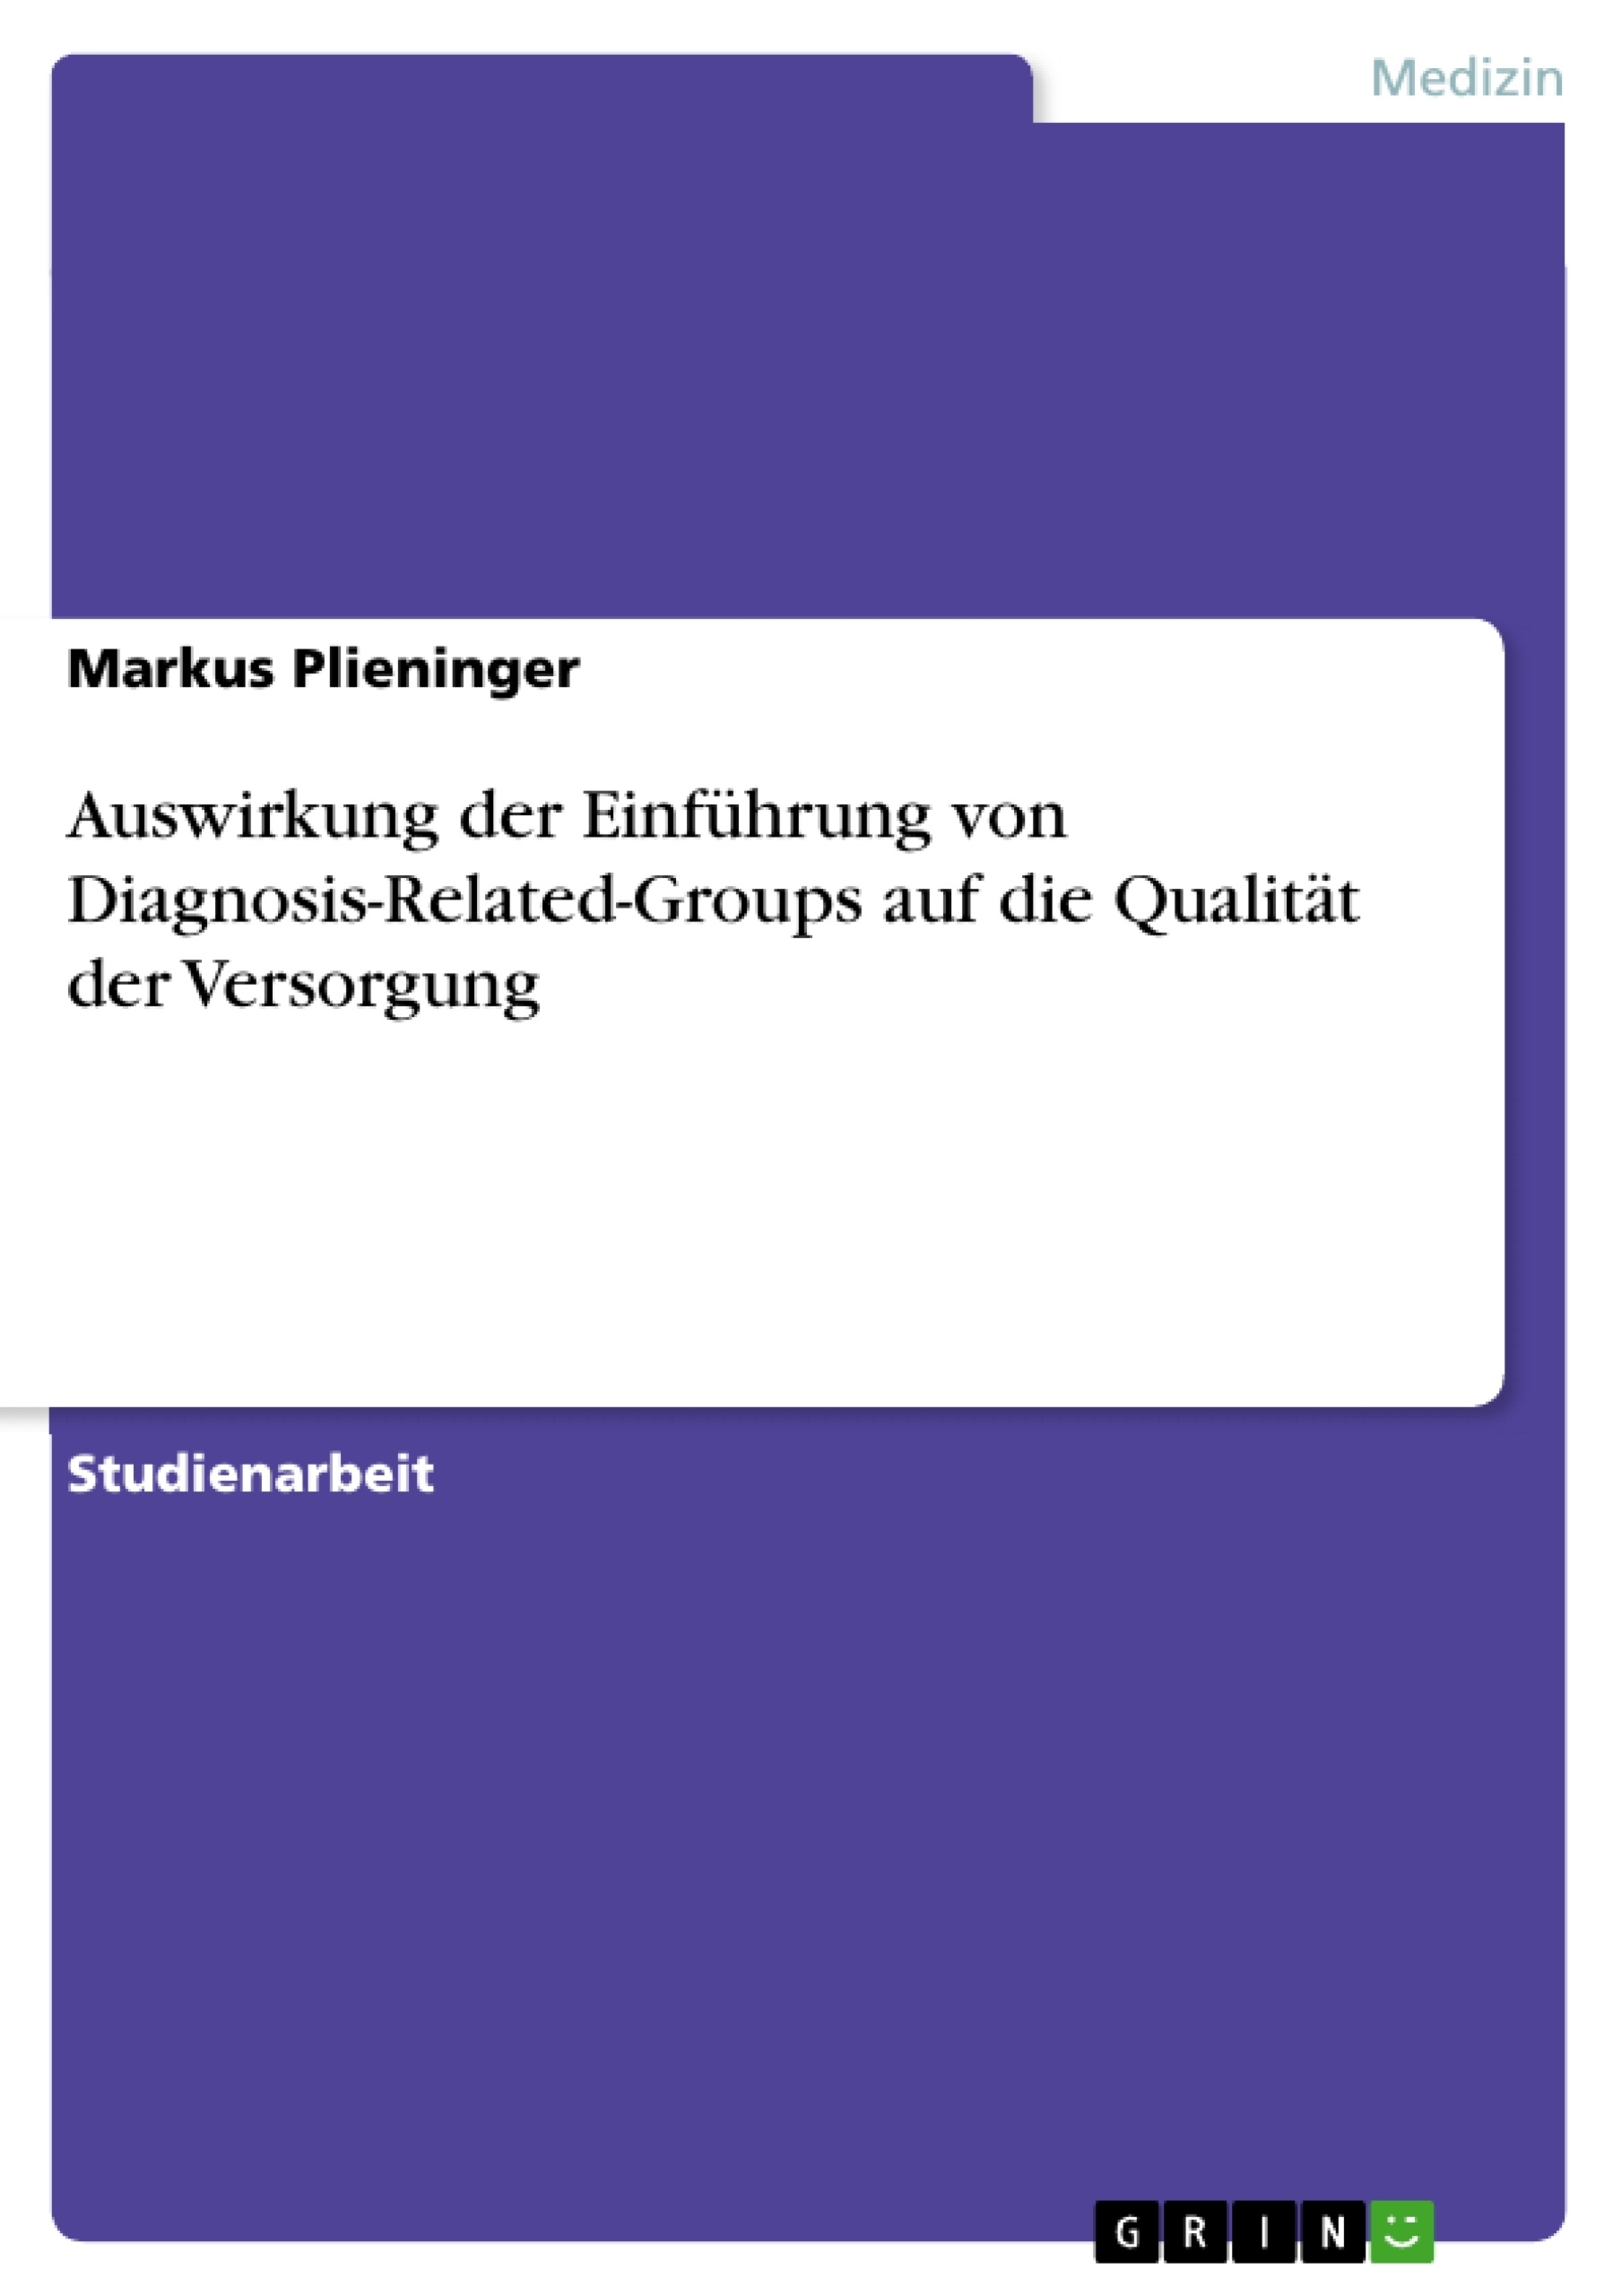 Título: Auswirkung der Einführung von Diagnosis-Related-Groups auf die Qualität der Versorgung